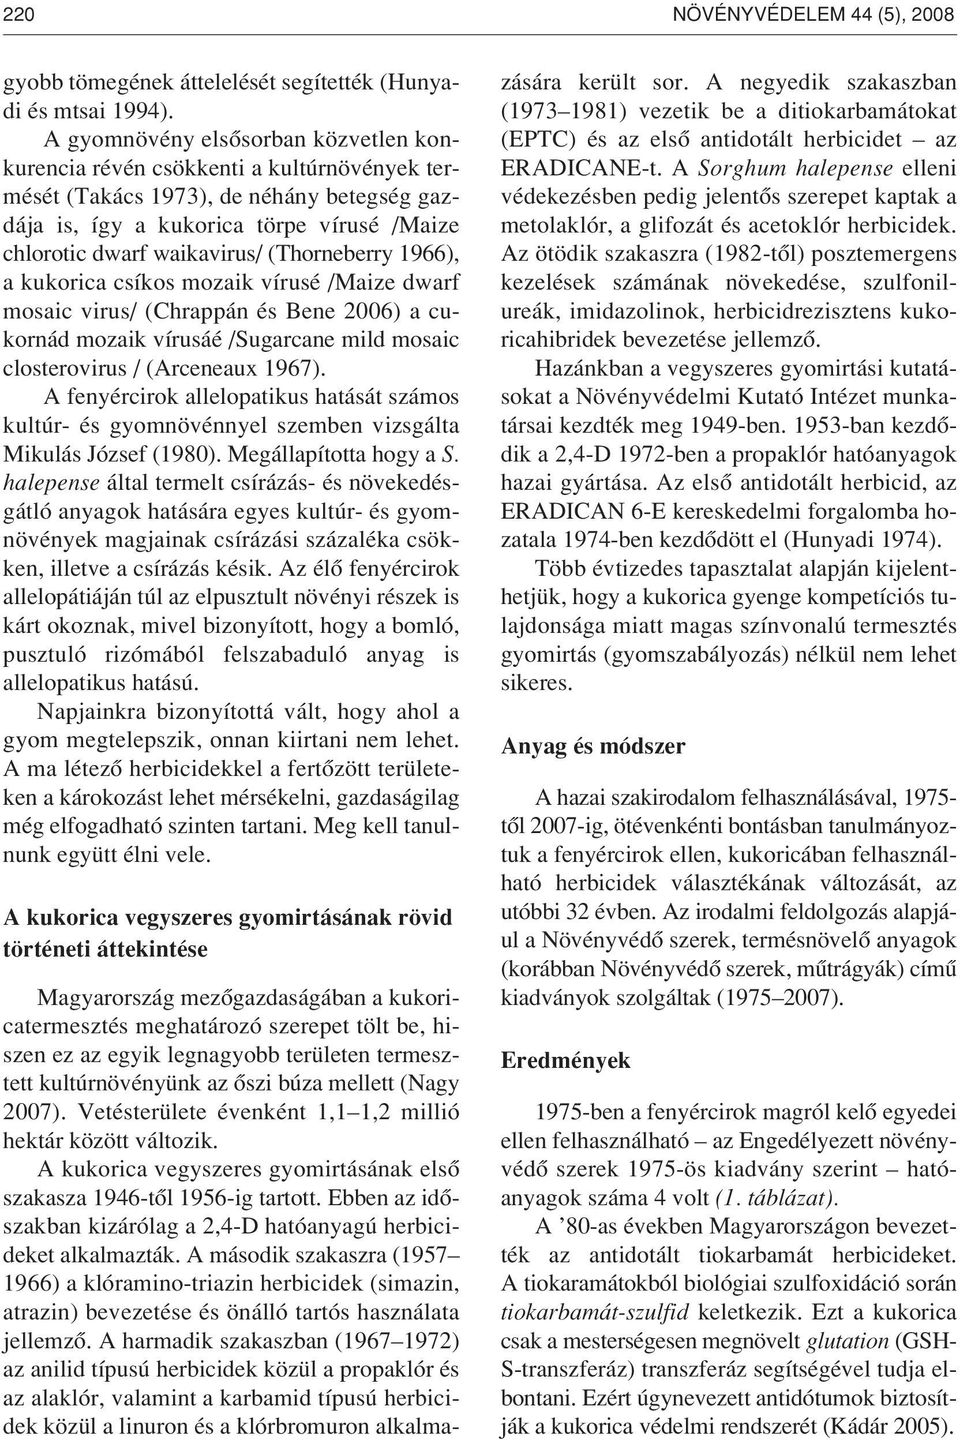 (Thorneberry 1966), a kukorica csíkos mozaik vírusé /Maize dwarf mosaic virus/ (Chrappán és Bene 2006) a cukornád mozaik vírusáé /Sugarcane mild mosaic closterovirus / (Arceneaux 1967).